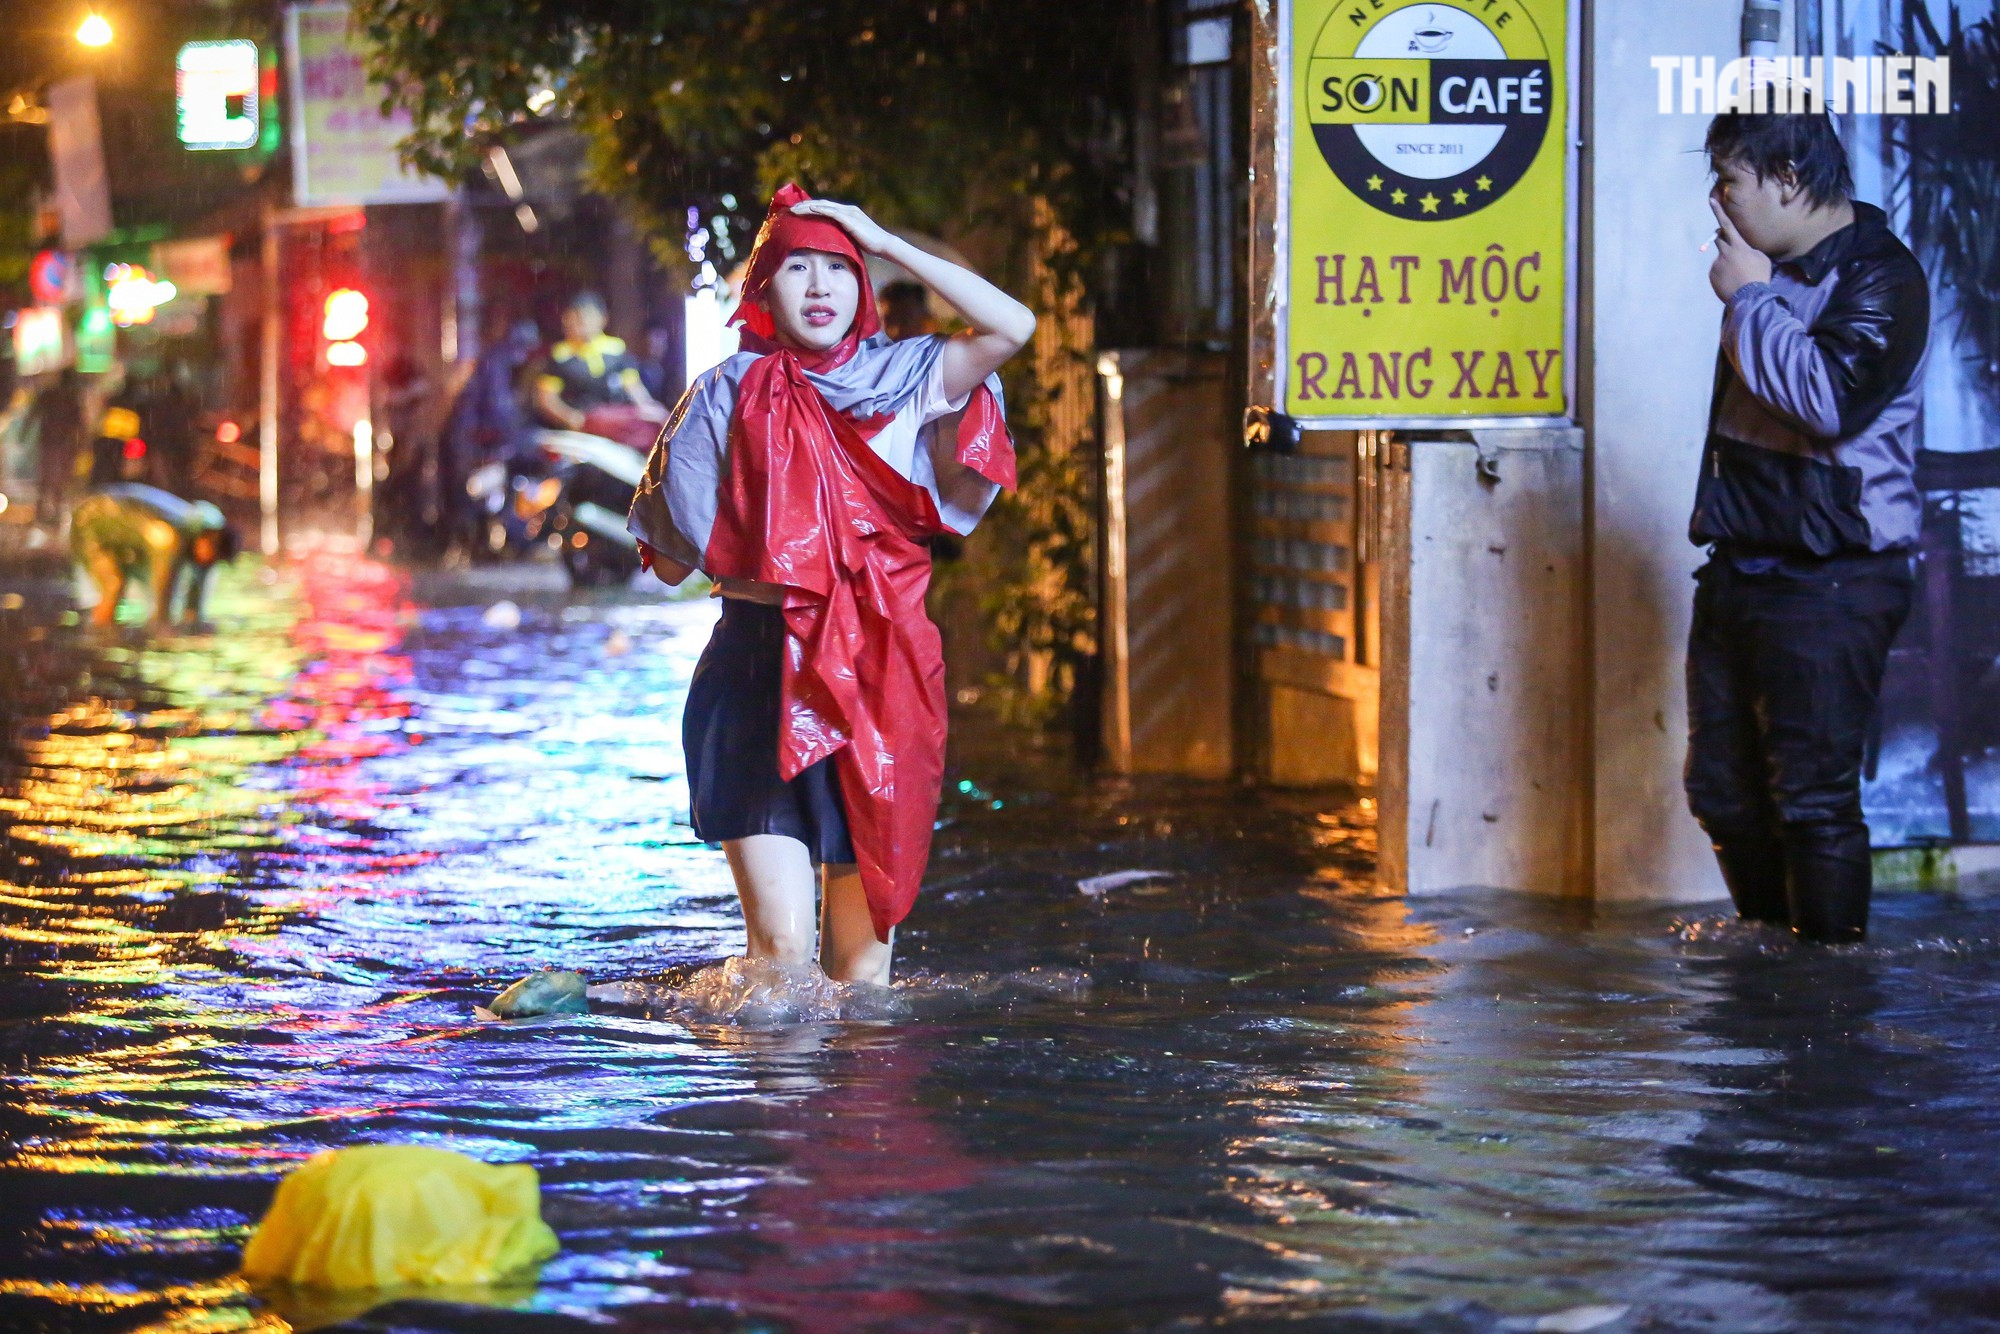 TP.HCM mưa lớn tối nay: Nước dâng tới yên, có người 'cõng xe' qua đoạn ngập - Ảnh 8.